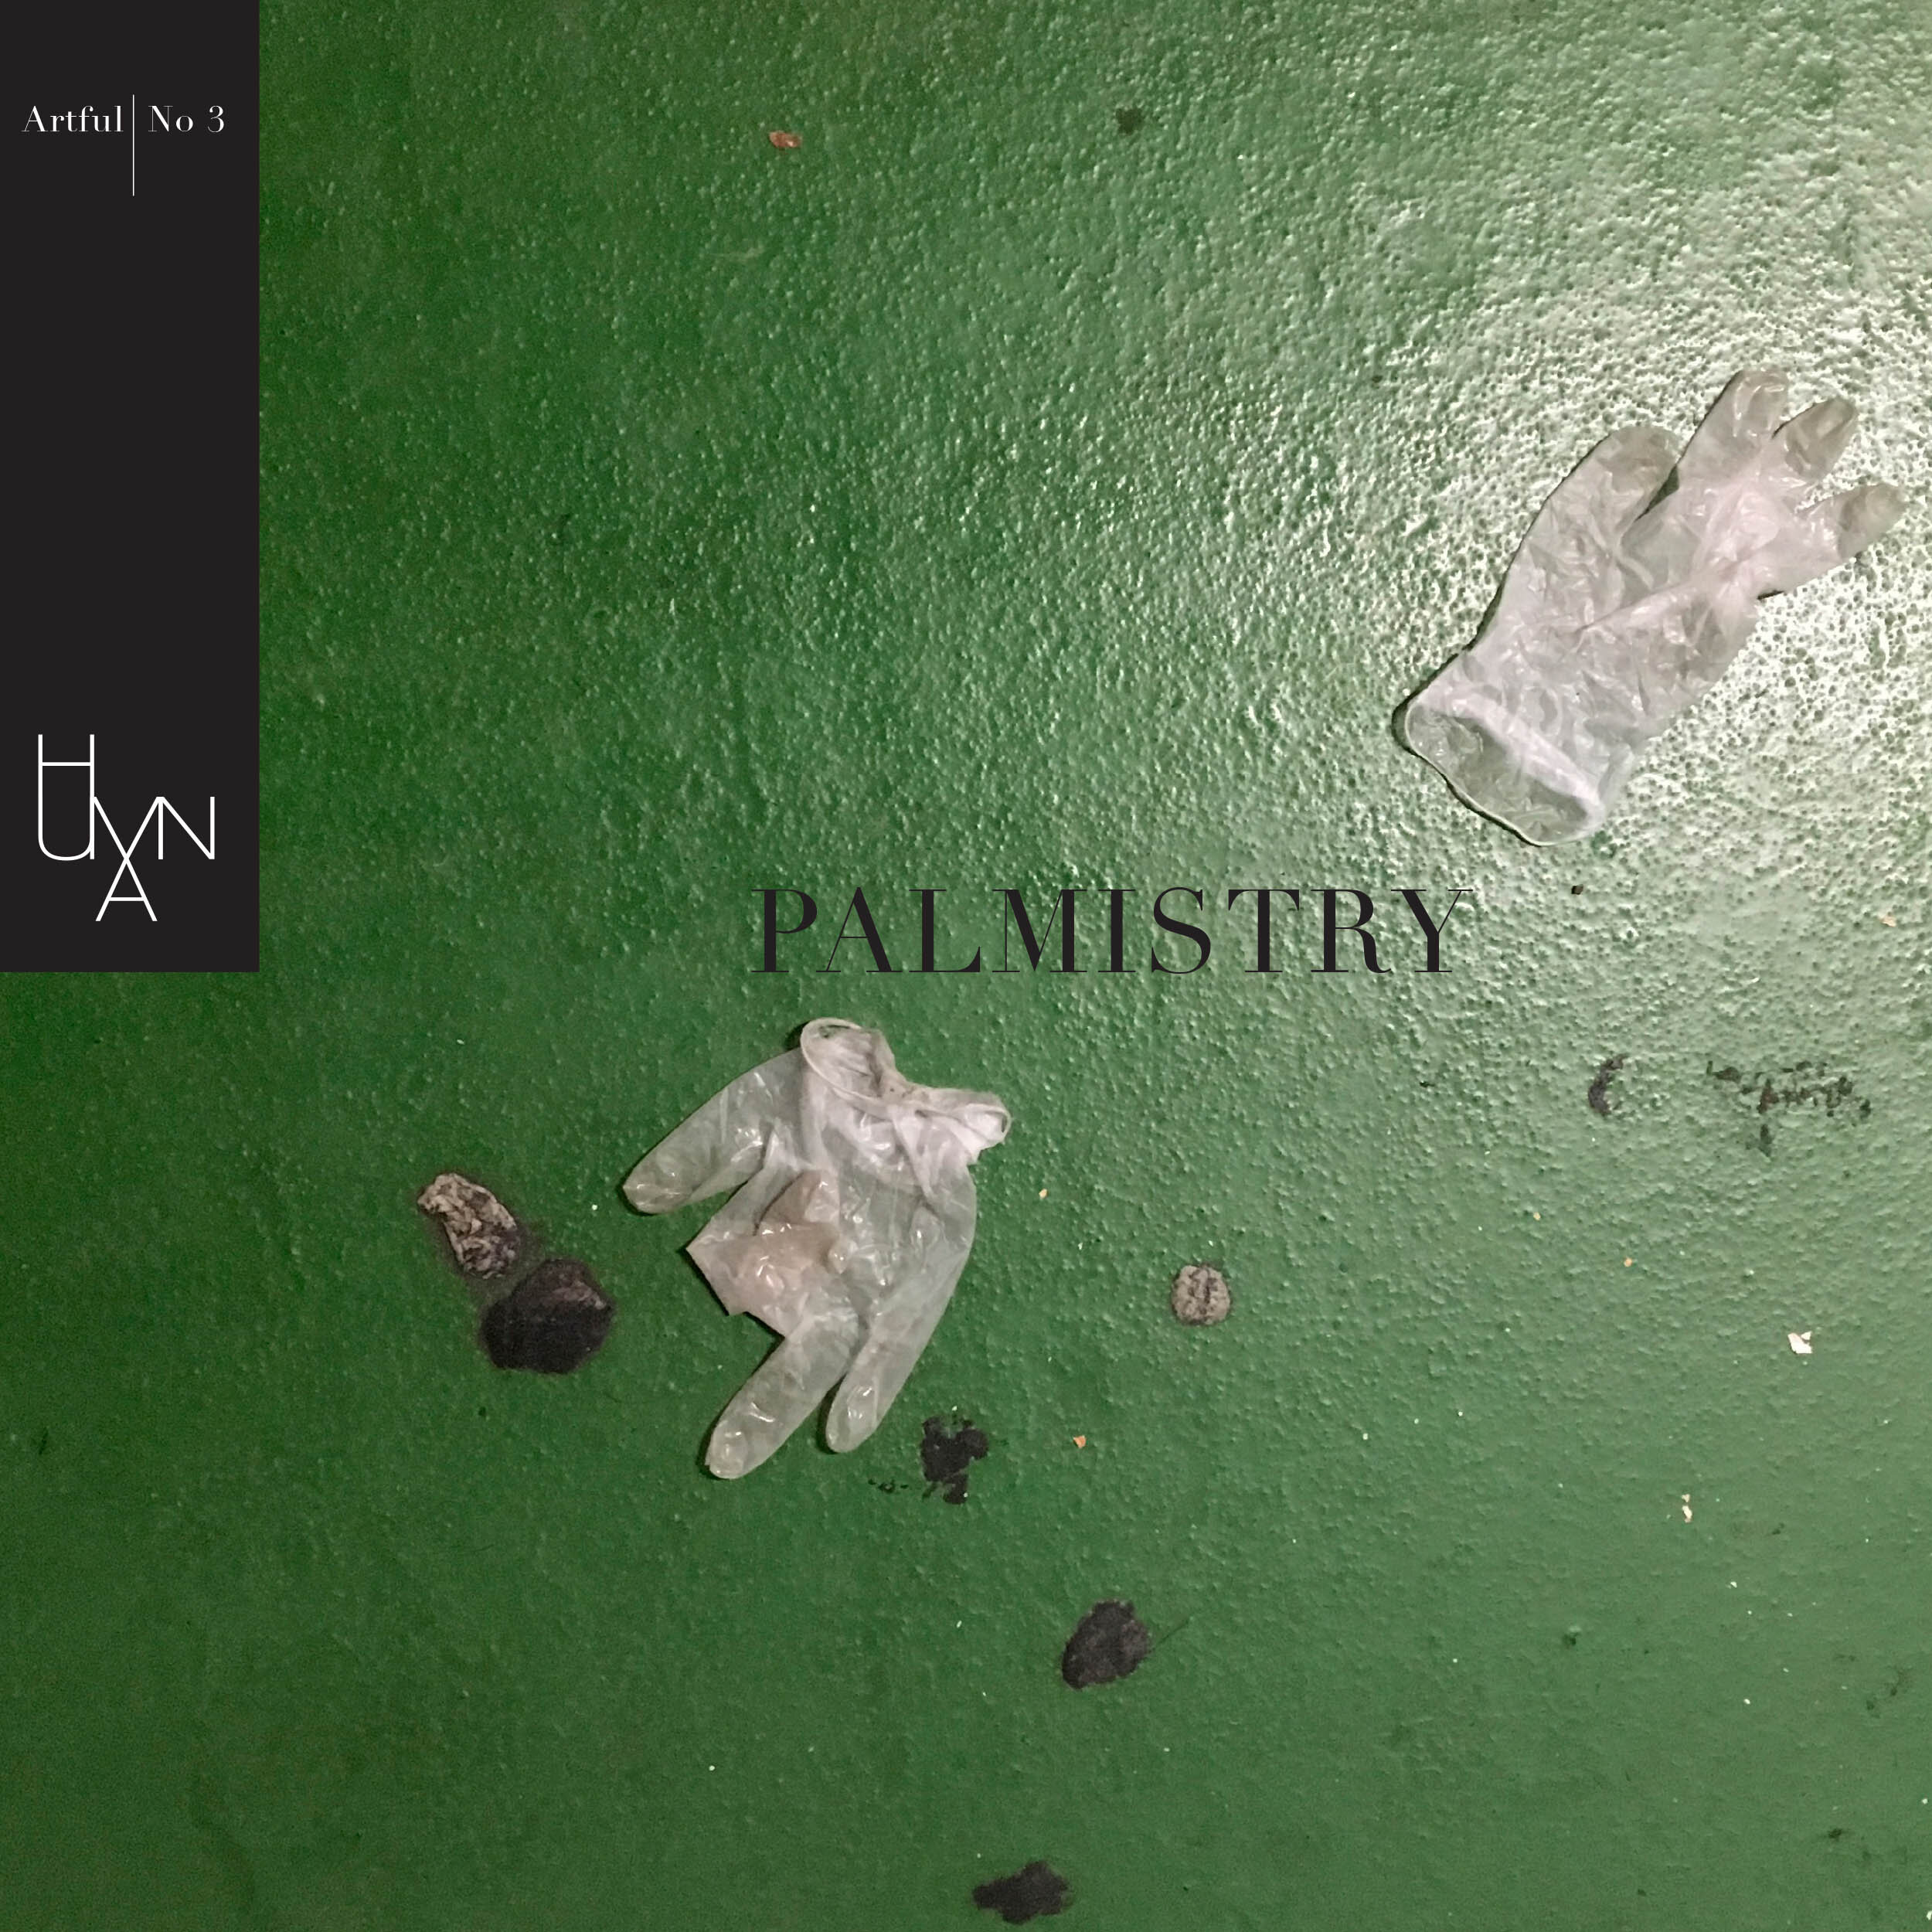 Palmistry cover.jpg